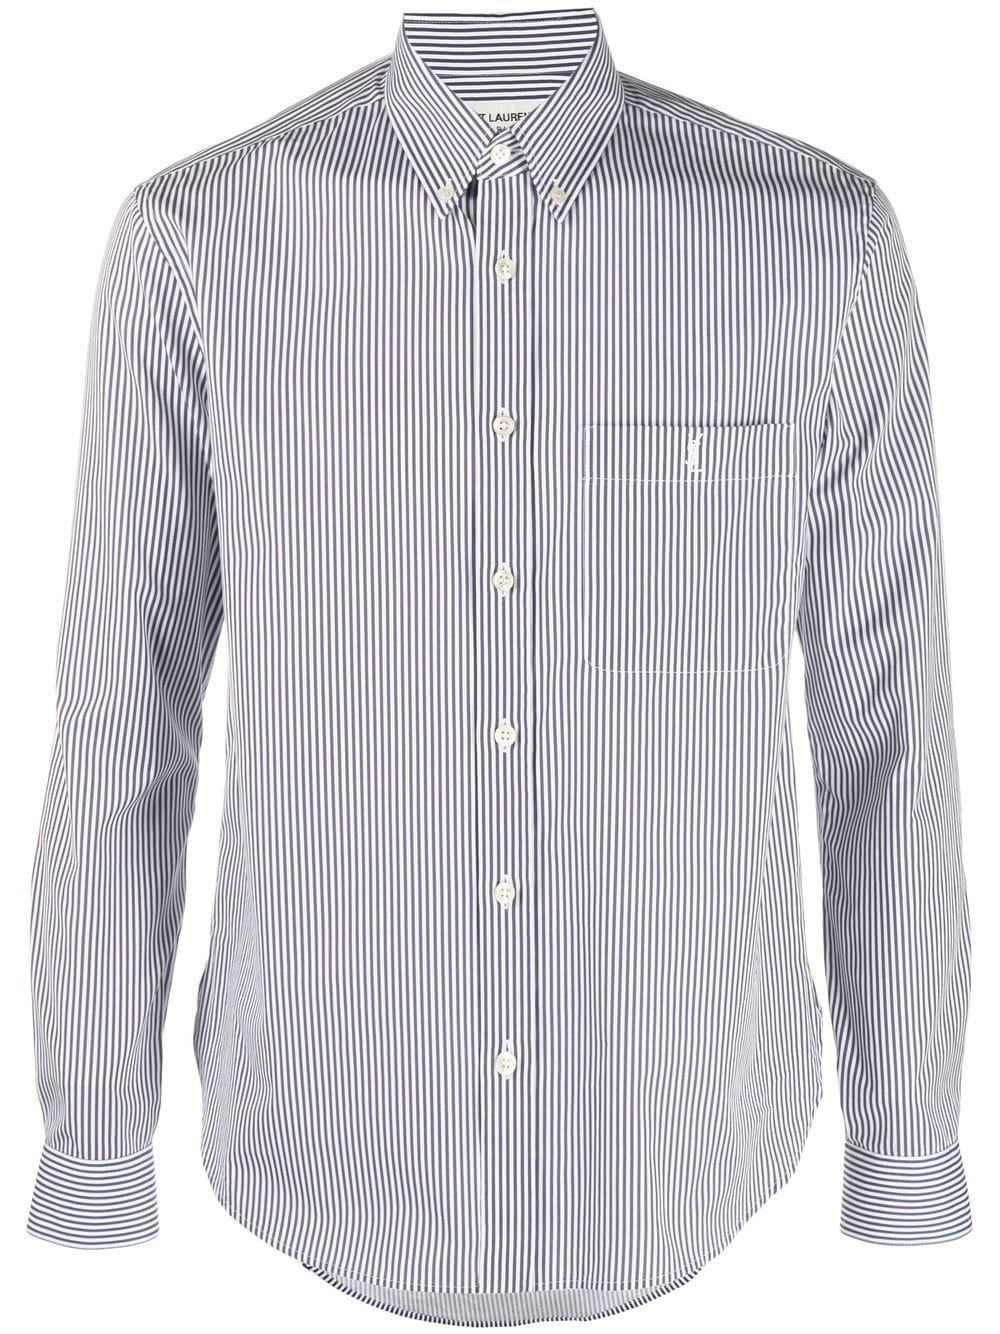 經典條紋棉襯衫 - 白色和海軍藍 - 男裝 - SAINT LAURENT 設計師